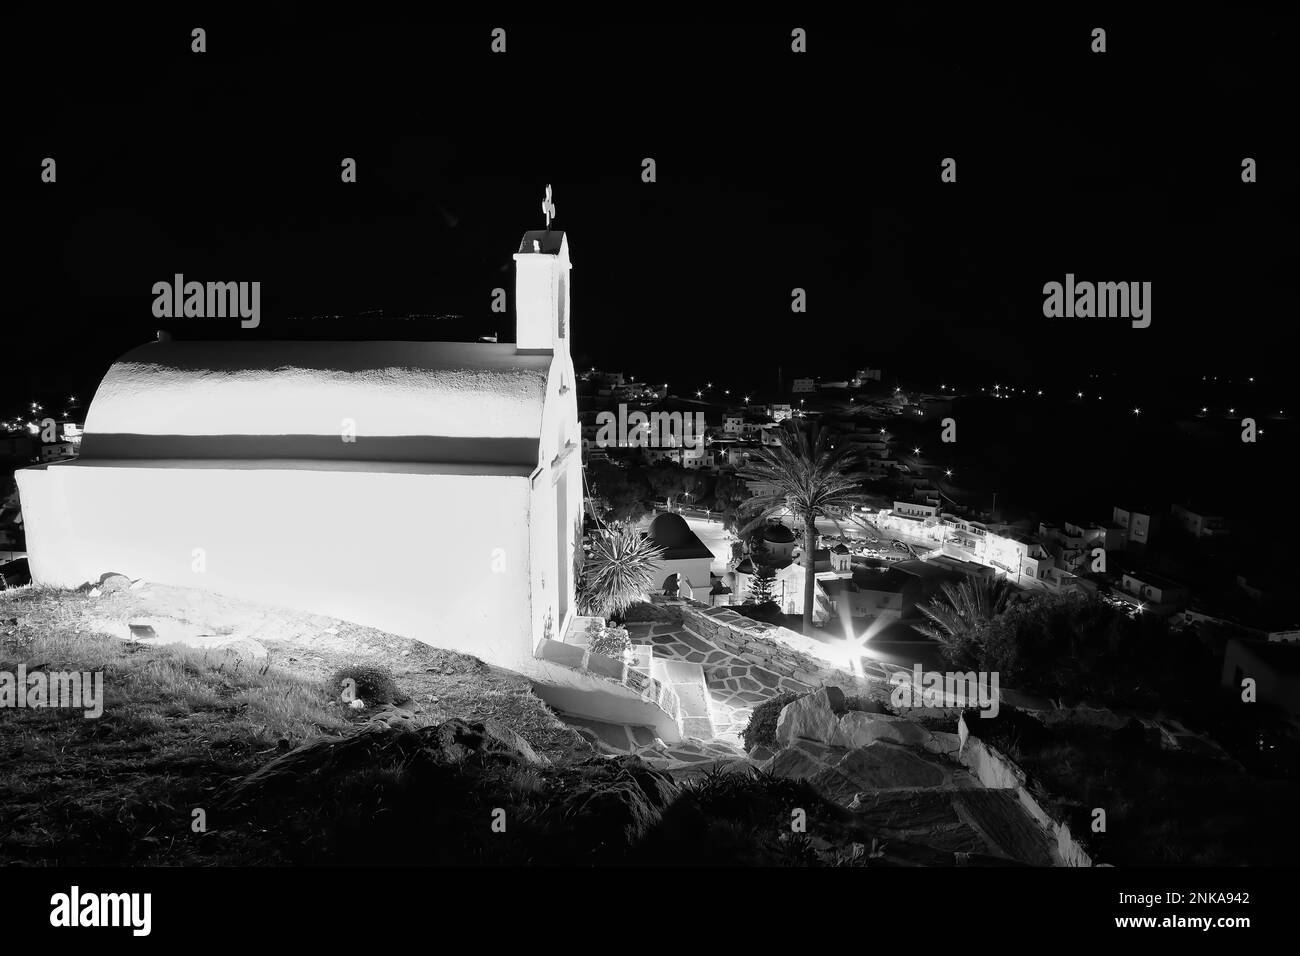 Vue sur une petite église blanchie à la chaux illuminée dans iOS Grèce au sommet de la colline Banque D'Images